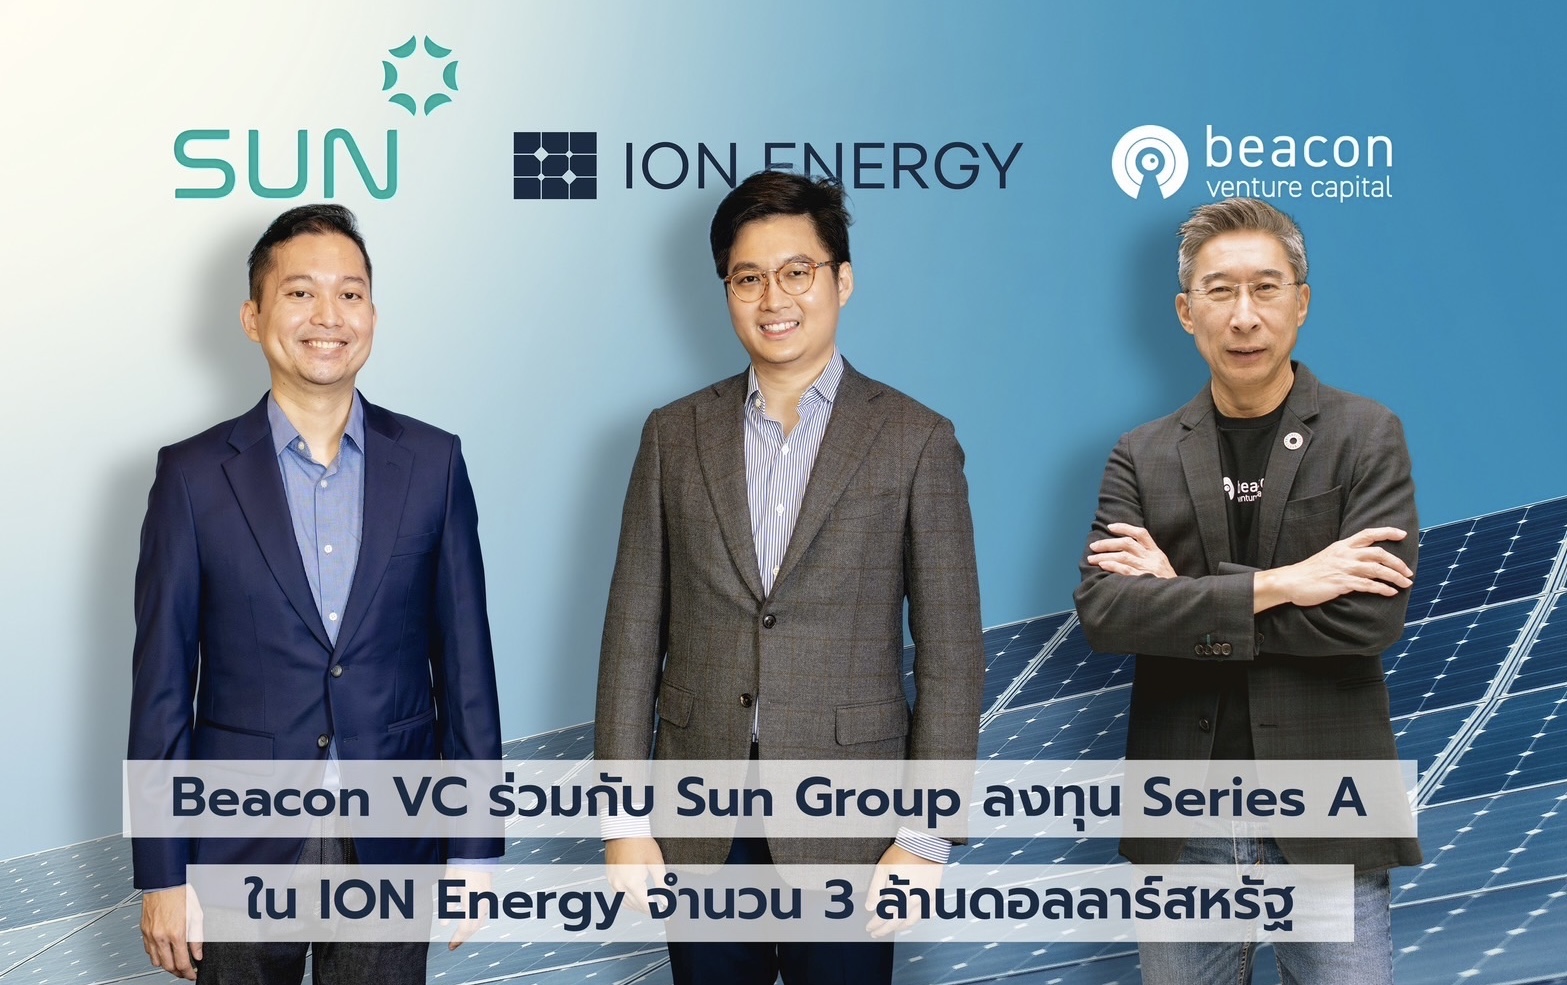 บีคอน วีซี ร่วมกับ SUN Group ลงทุน Series A ใน ION Energyสตาร์ทอัพพลังงานโซลาร์สัญชาติไทย หนุนการเข้าถึงพลังงานสะอาดต้นทุนต่ำ